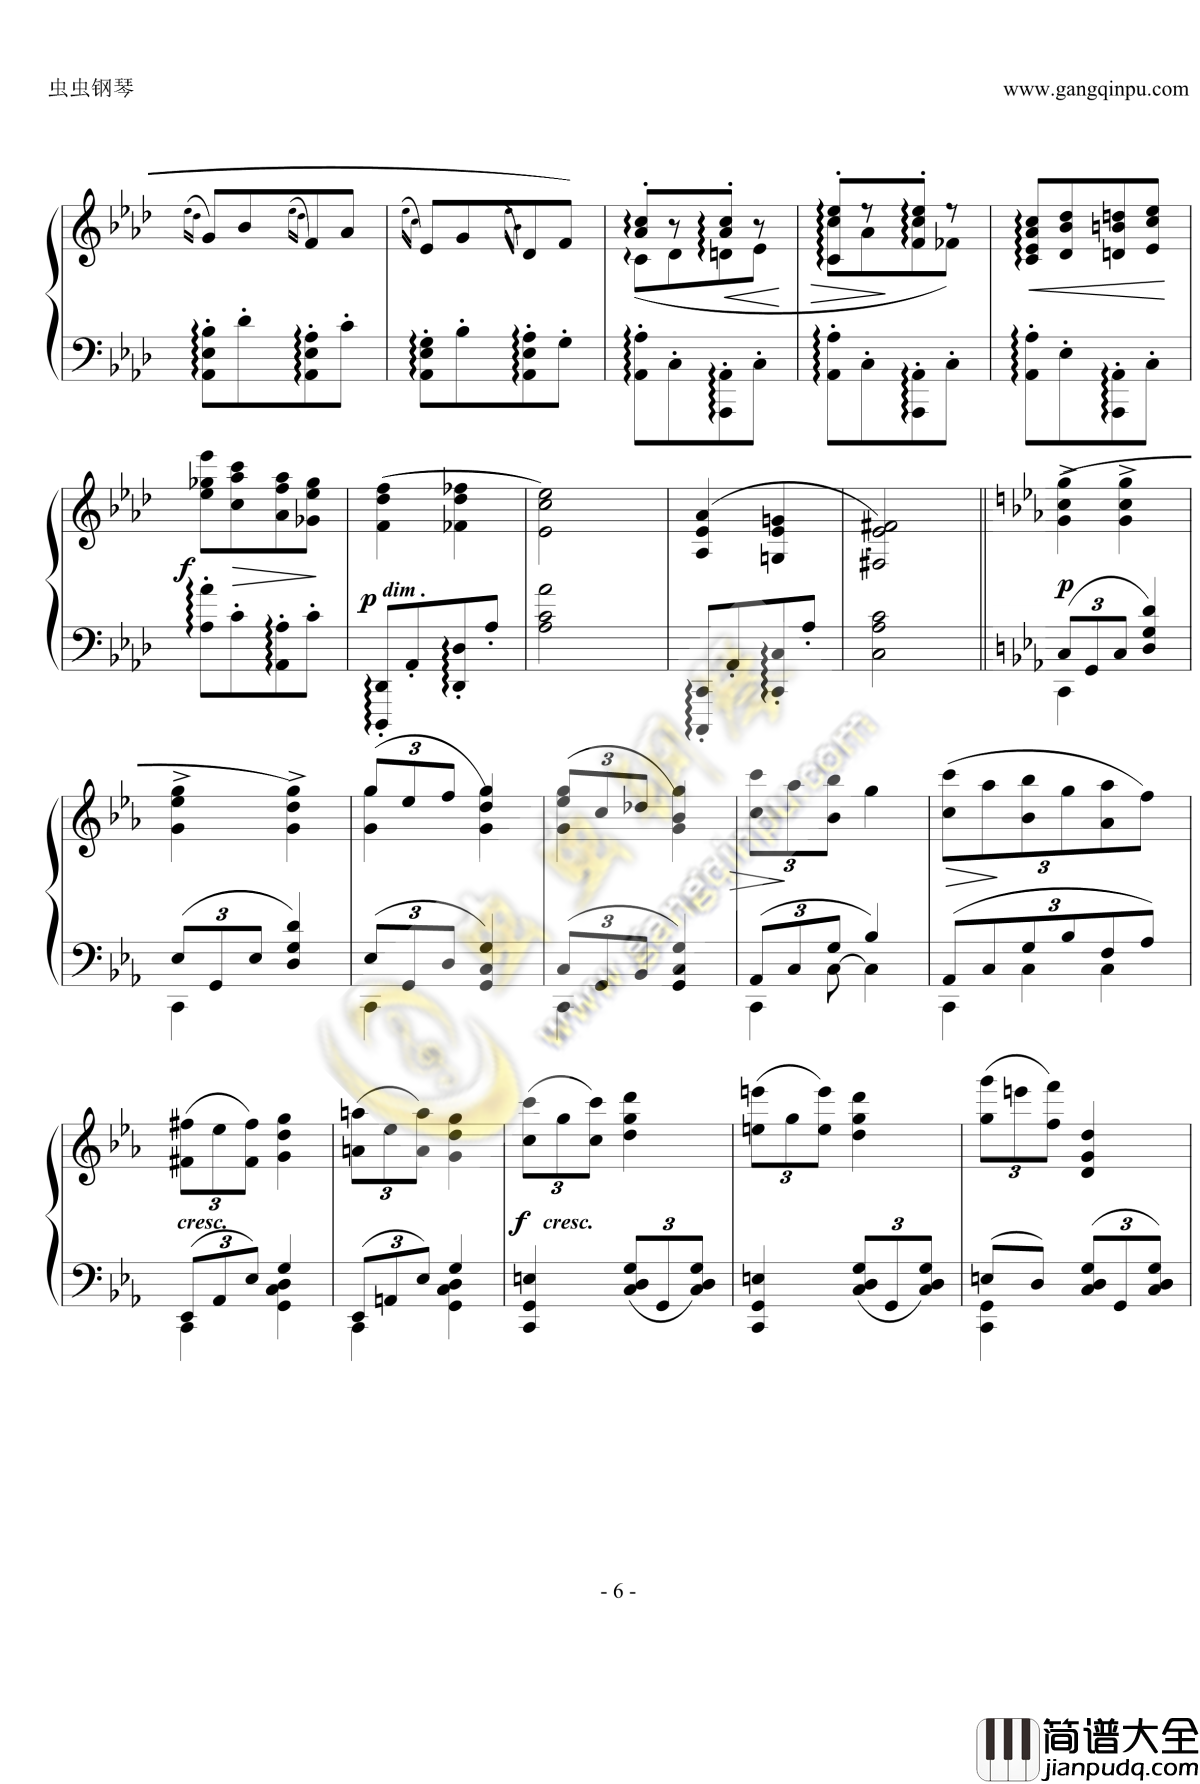 狂想曲Op.119__No.4钢琴谱_勃拉姆斯_Brahms